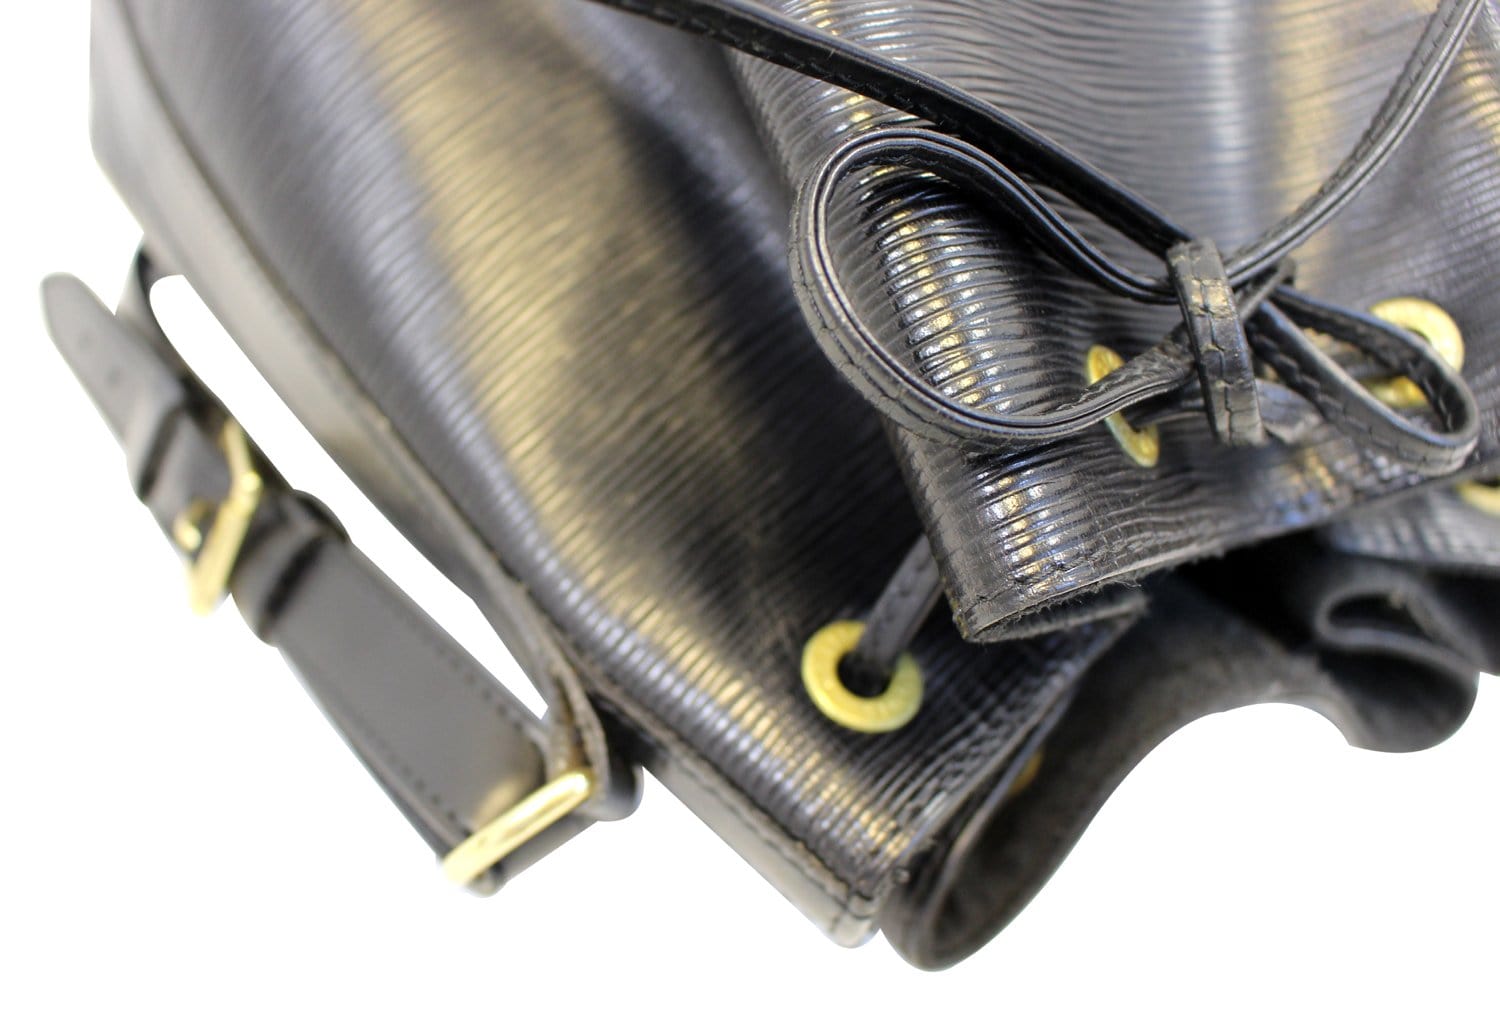 Louis Vuitton Petit Noé Handbag in Blue EPI Leather and Black Leather